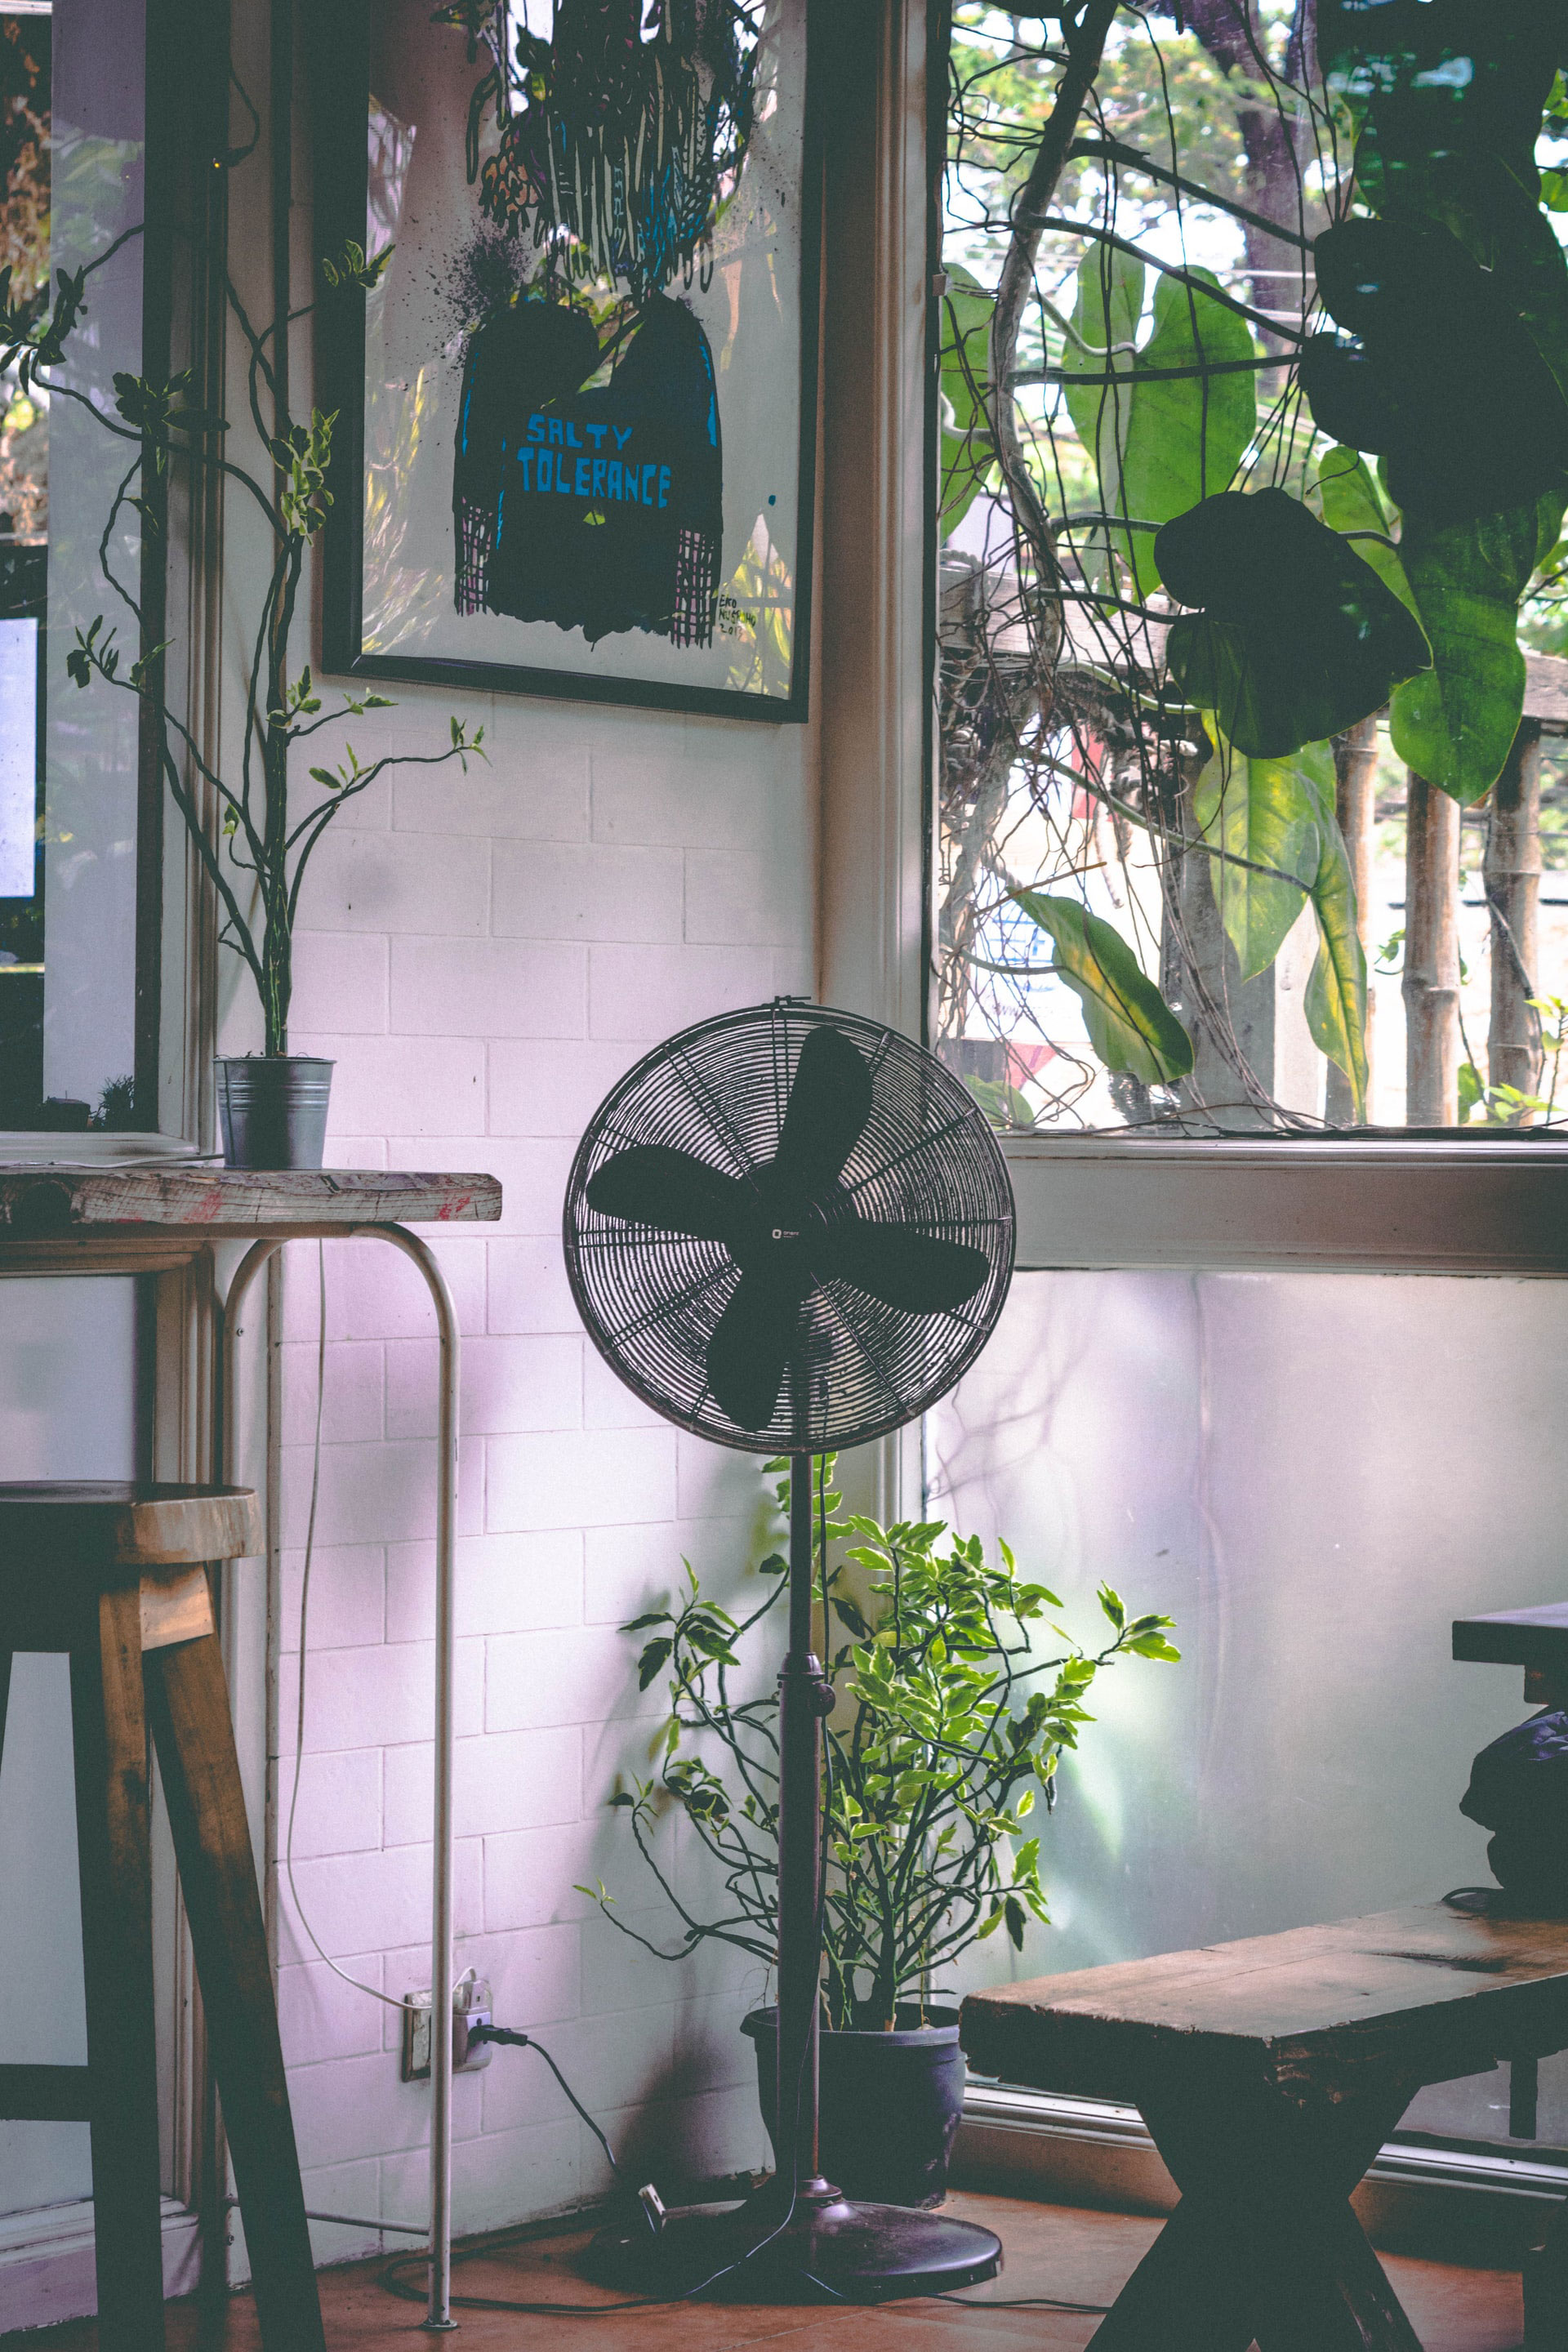 ventilateur avec de nombreuses plantes pour rafraichir la maison pendant la canicule